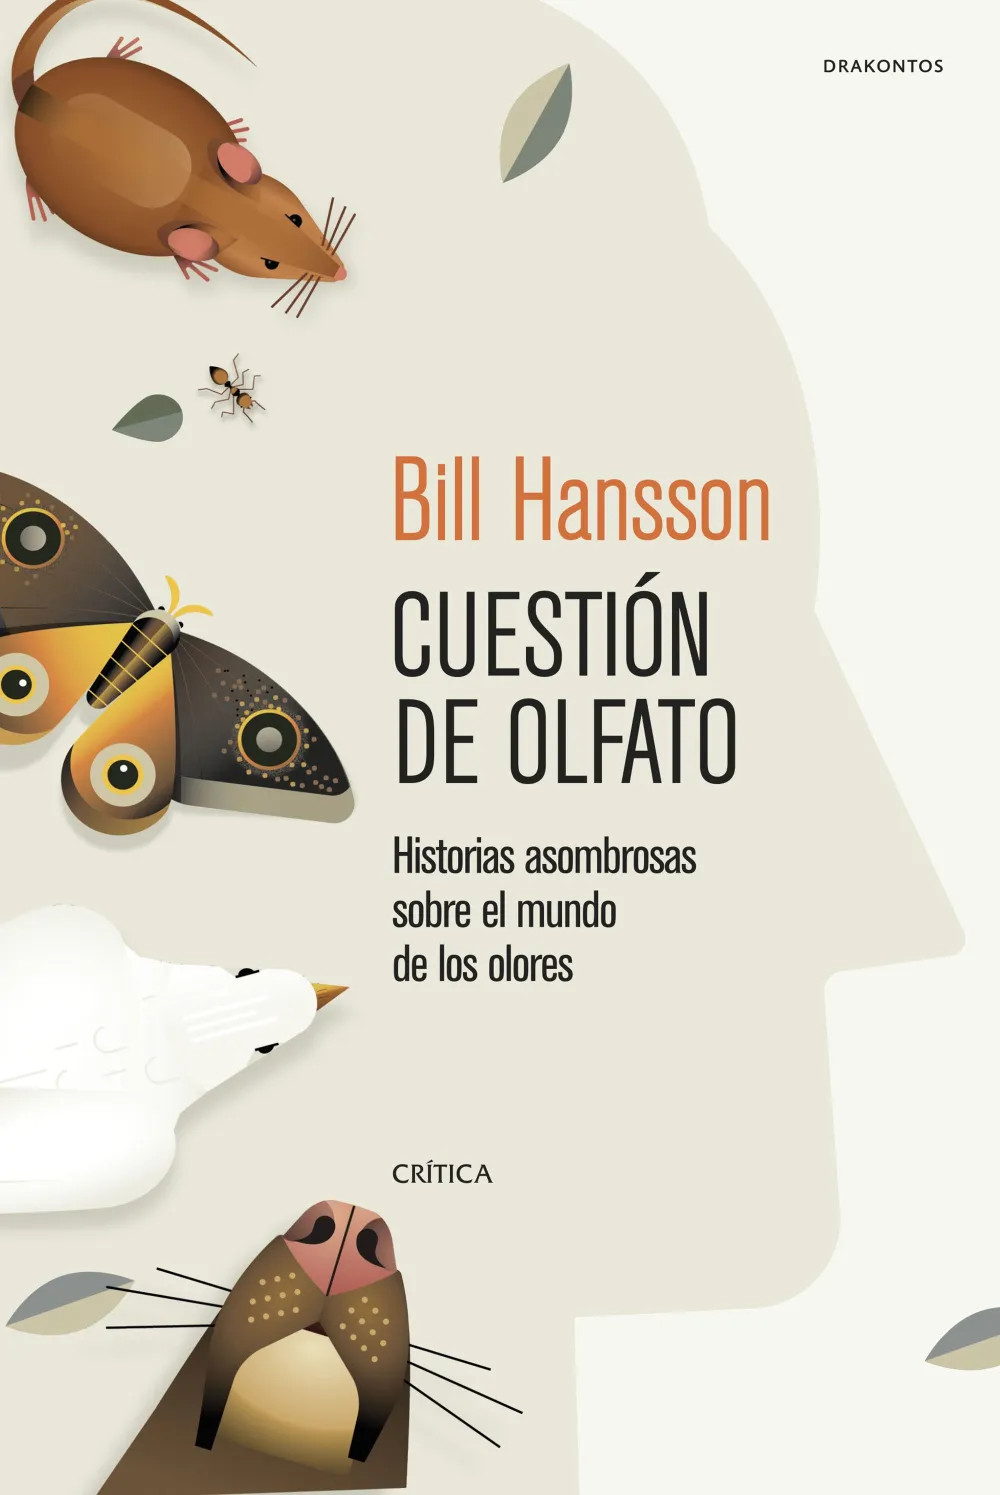 Cuestión de olfato: Historias asombrosas sobre el mundo de los olores. Bill Hansson.